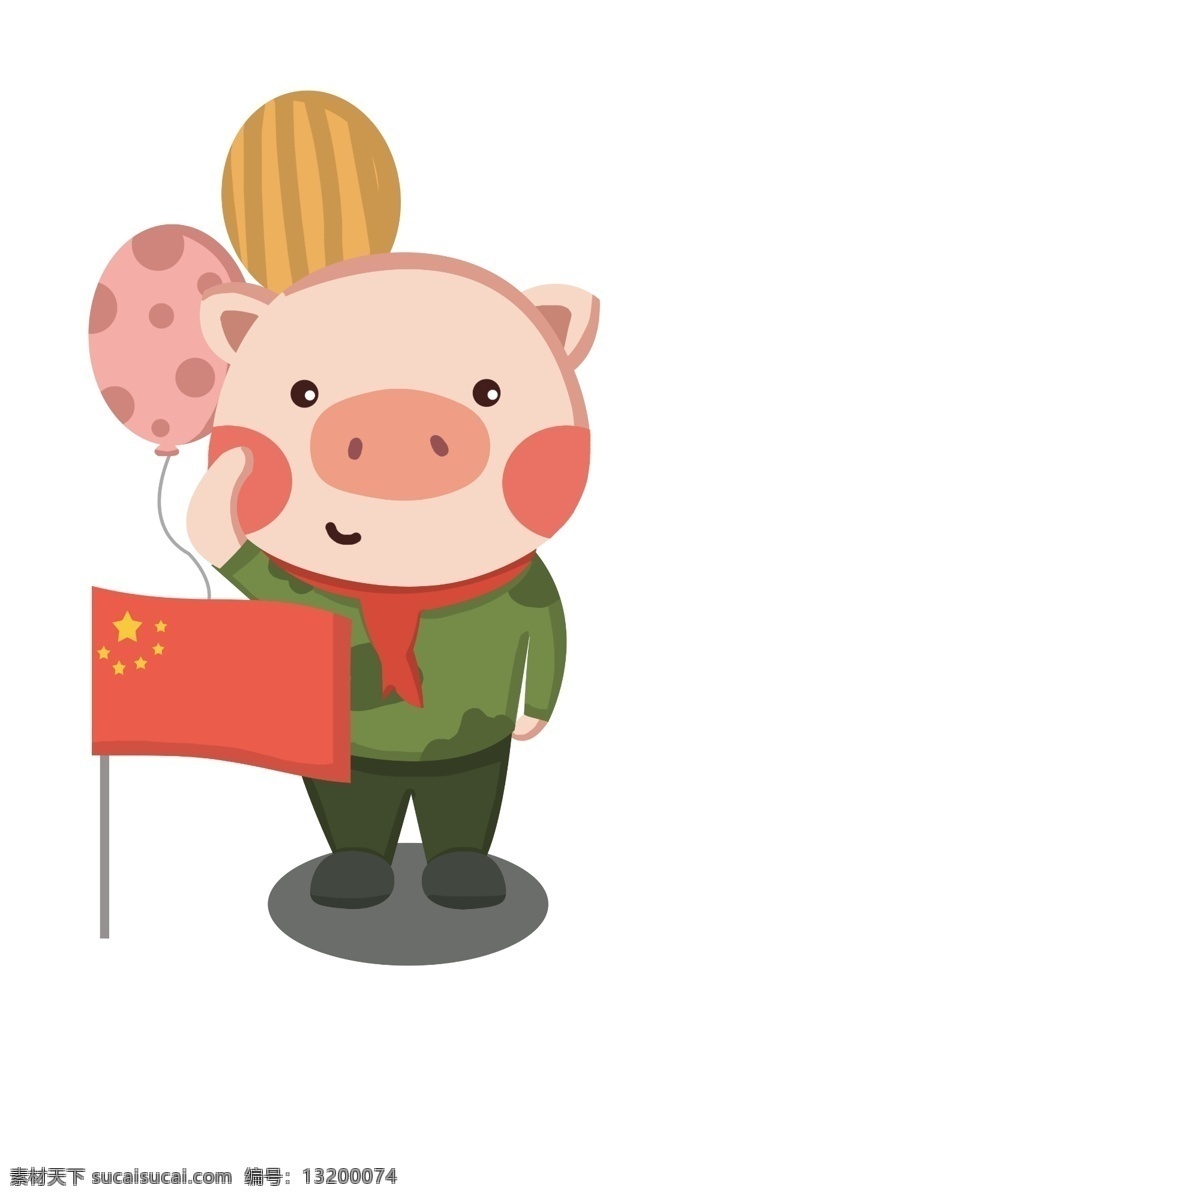 卡通 手绘 猪年 可爱 呆 萌 小 猪 气球 红旗 绿色 军装 猪年小猪 小猪 可爱呆萌小猪 绿色军装 卡通可爱小猪